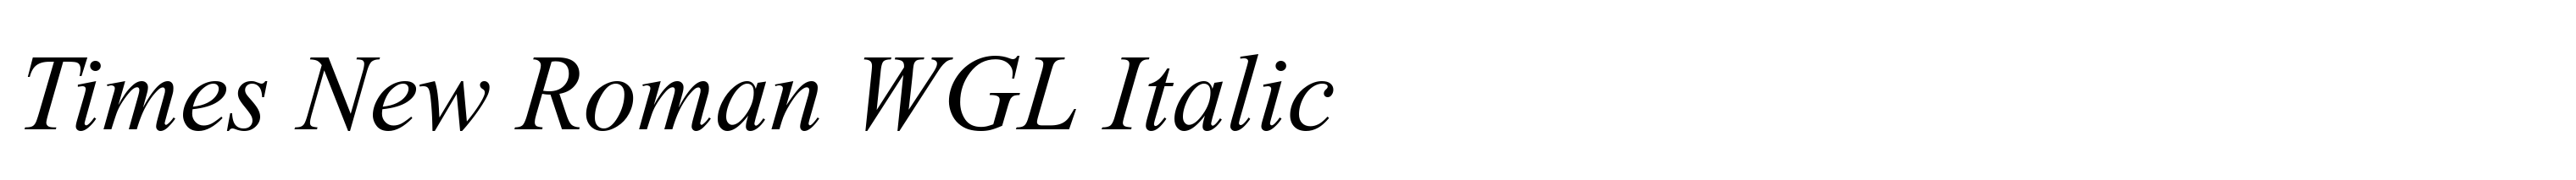 Times New Roman WGL Italic